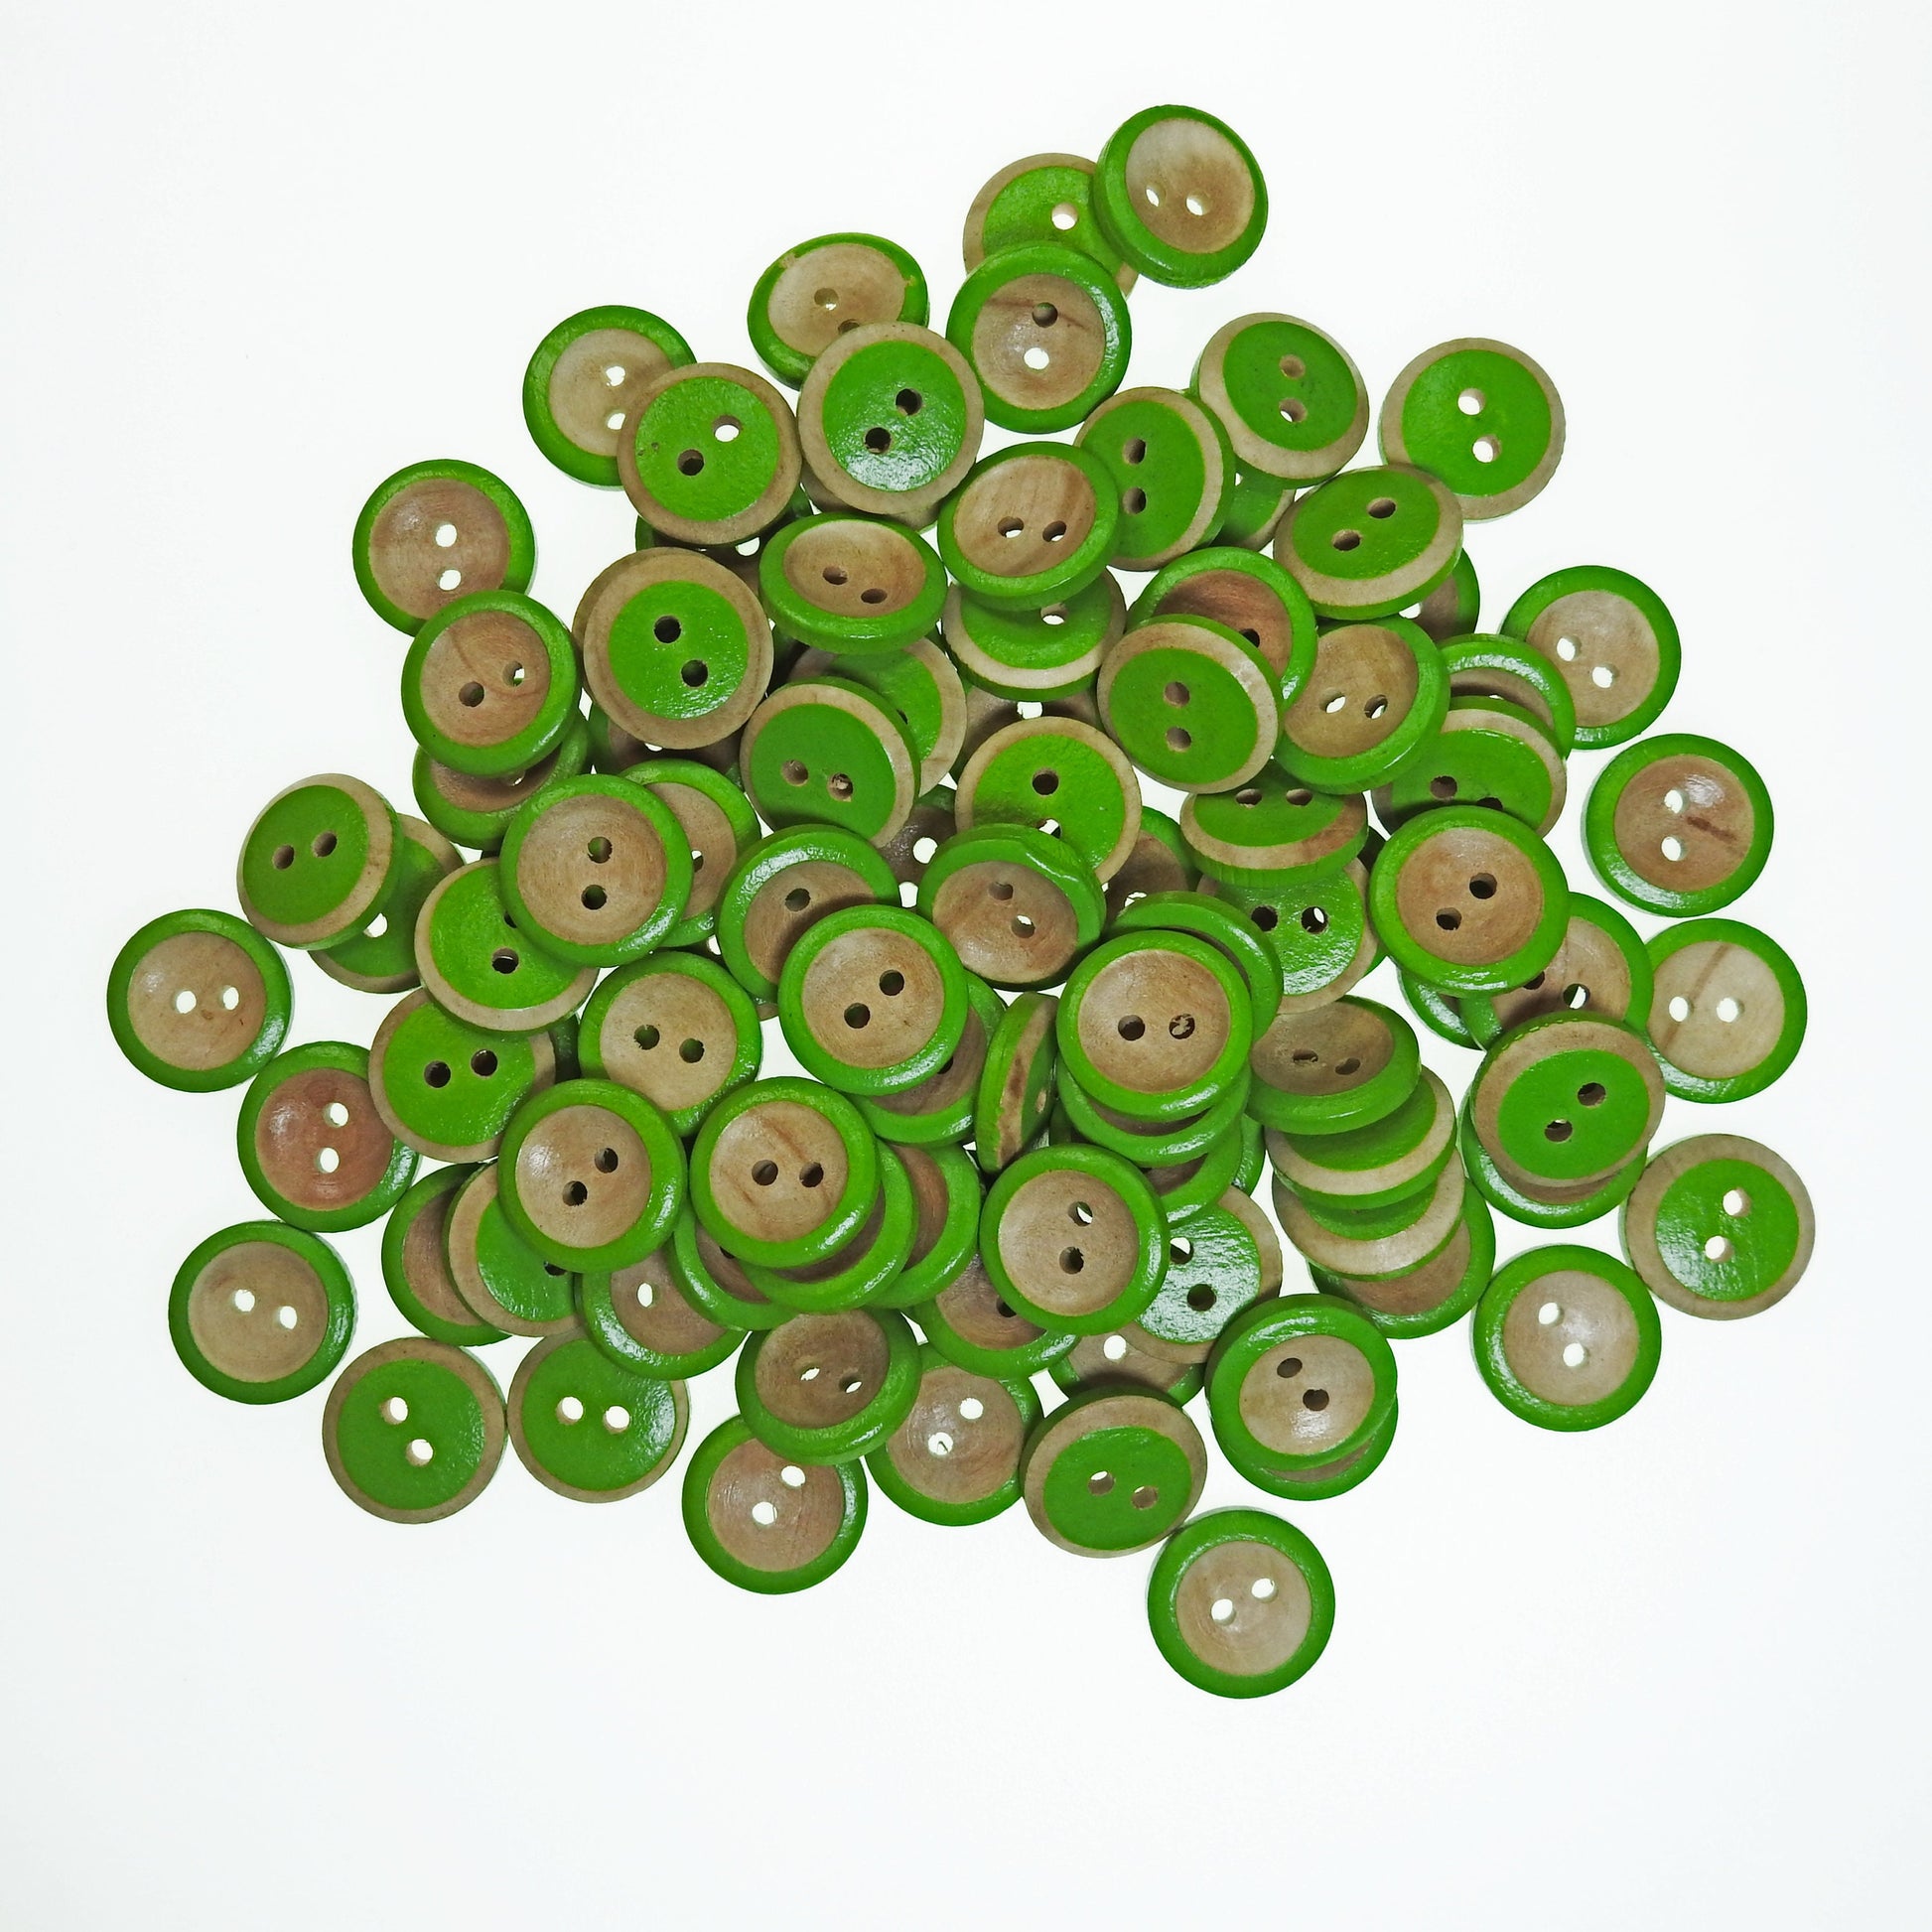 Green wooden buttons